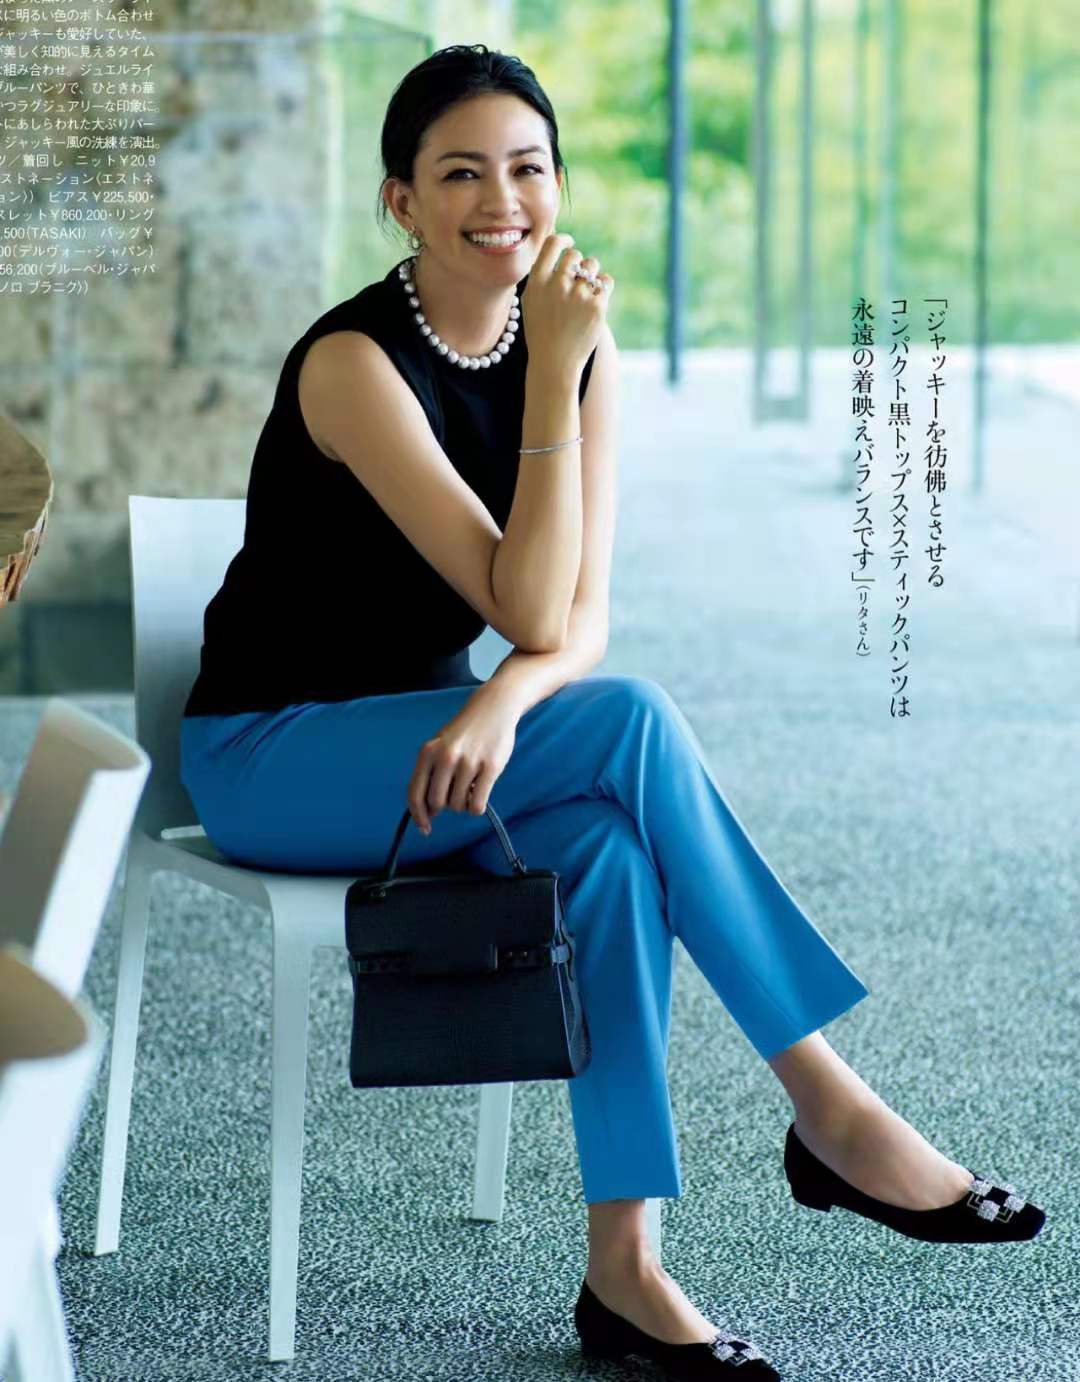 日系成熟女性穿衣风格图片